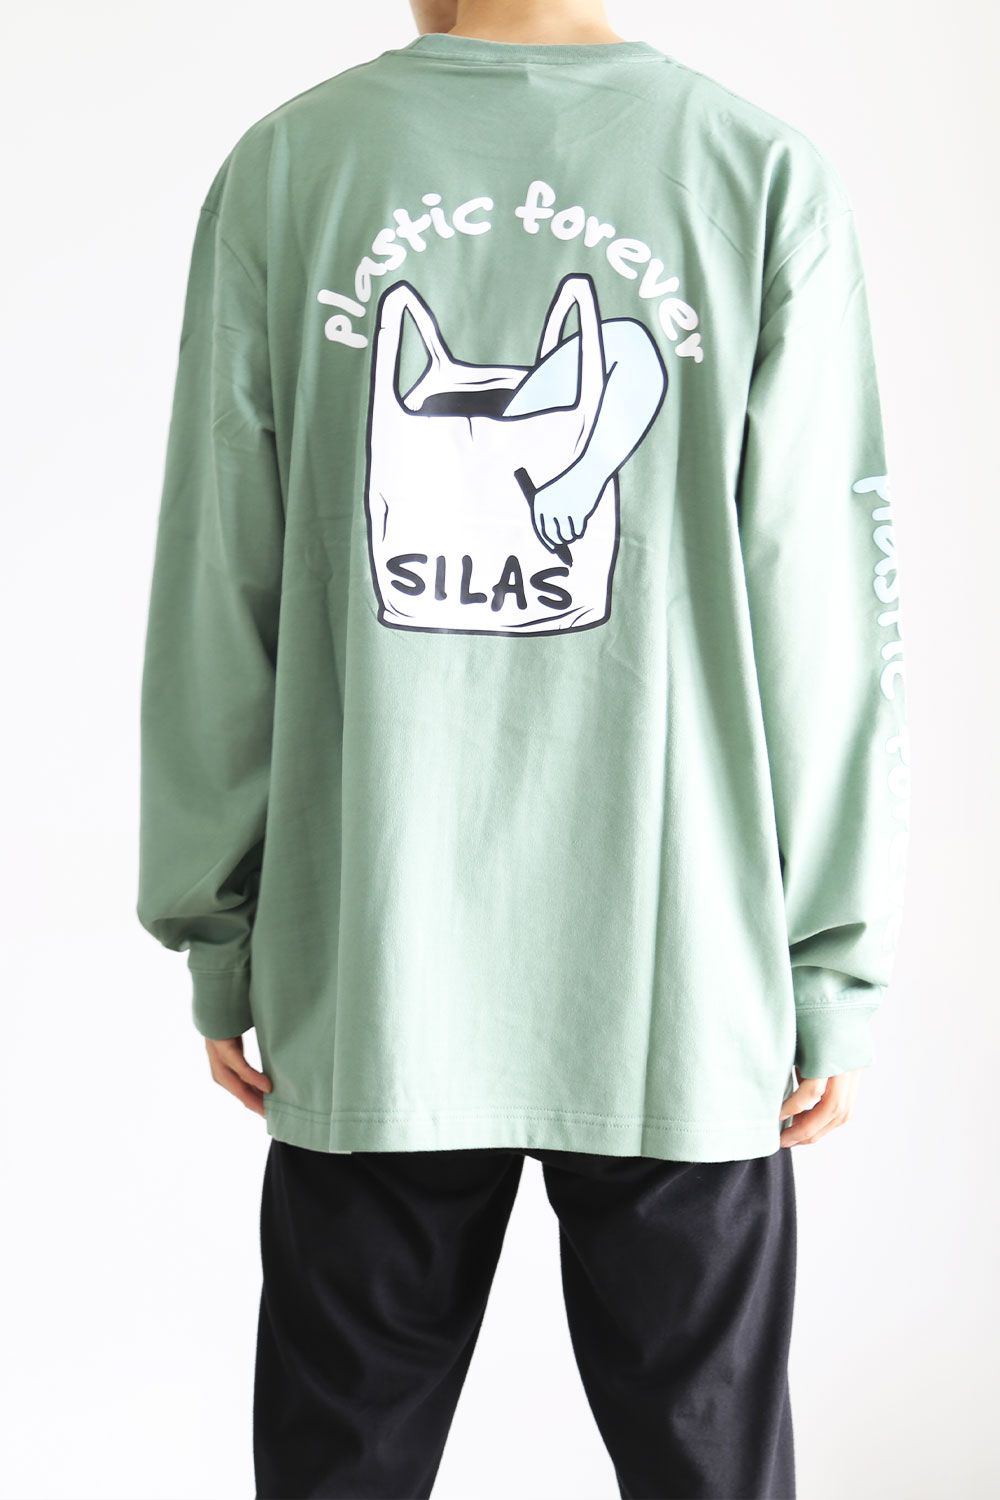 SILAS - サイラス | 正規通販ストア《Tempt》